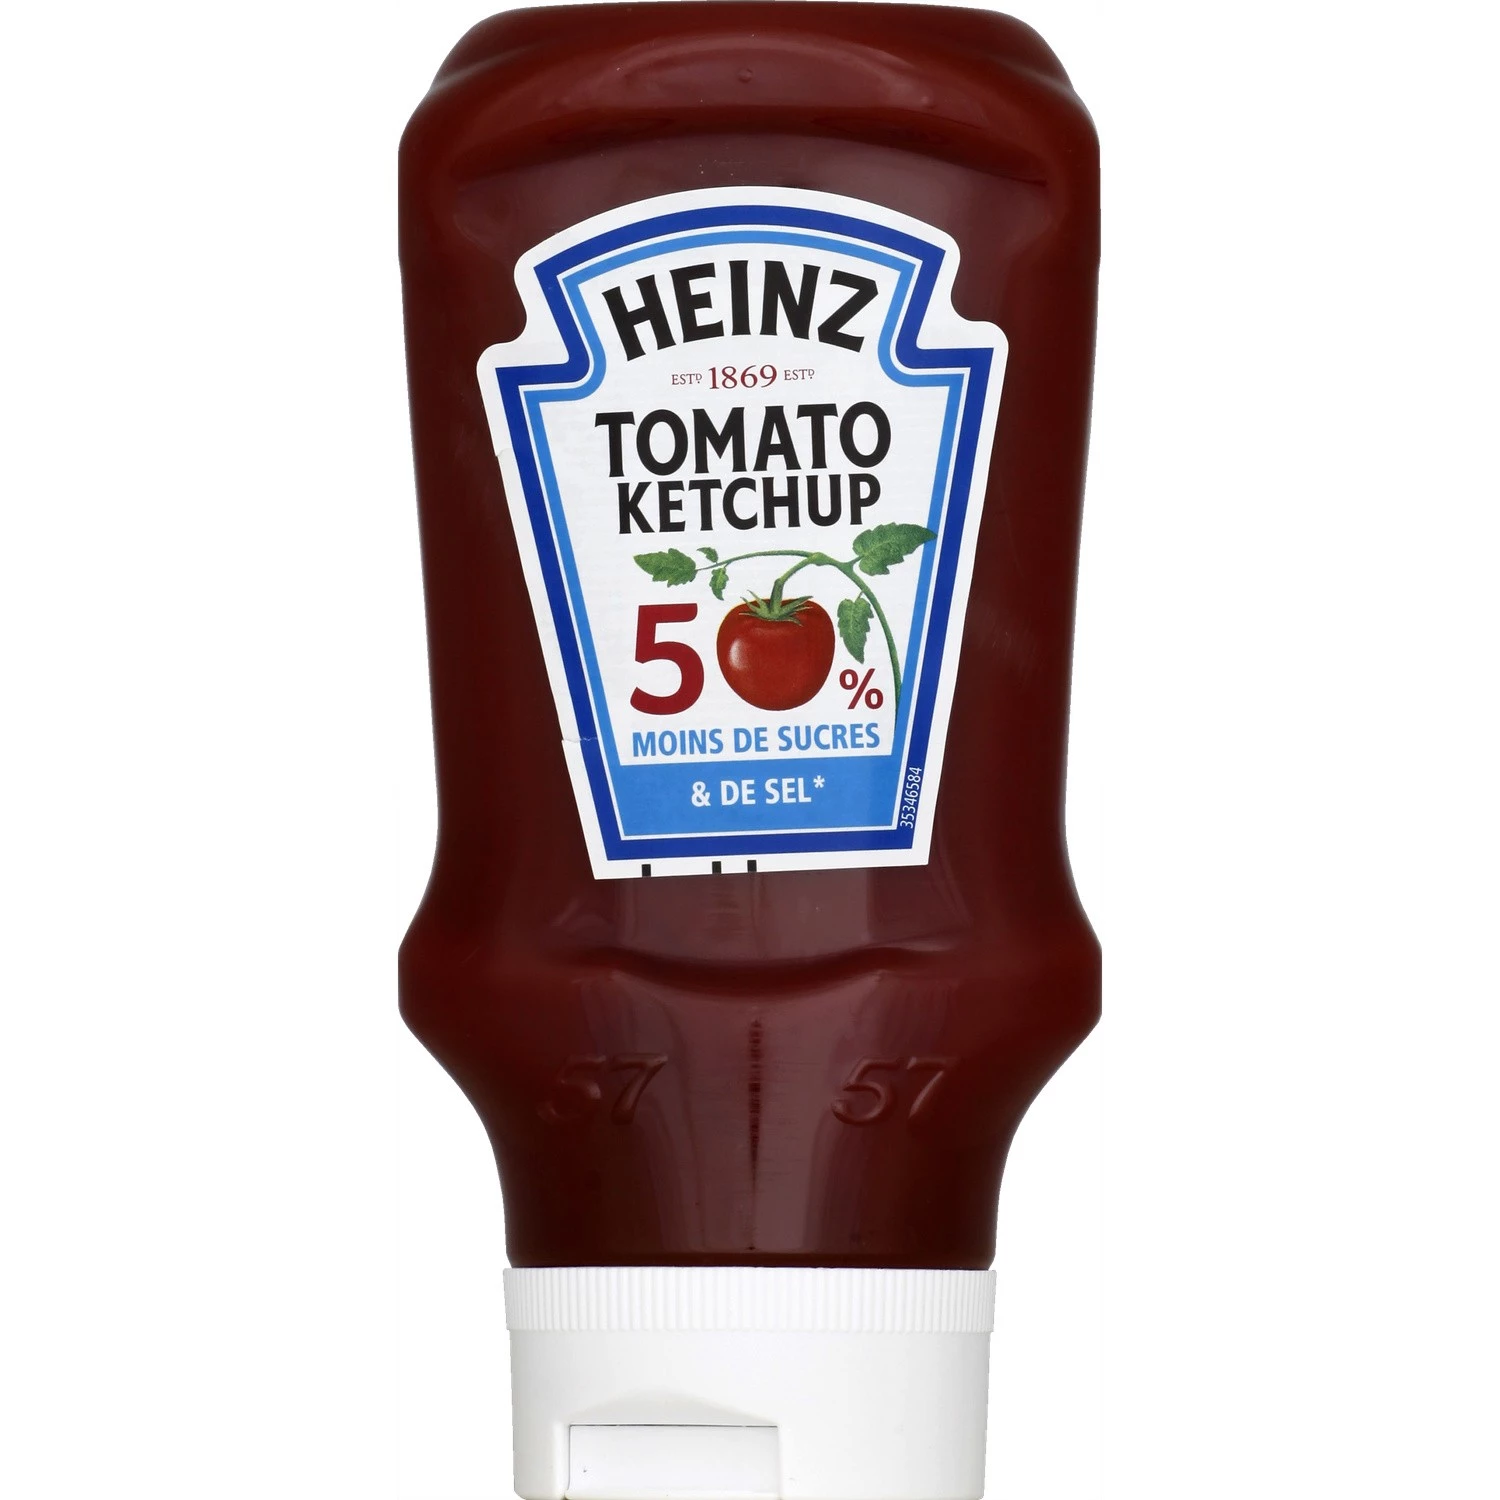 Tomato Ketchup 50% Moins de Sucres & de Sel, 435g - HEINZ